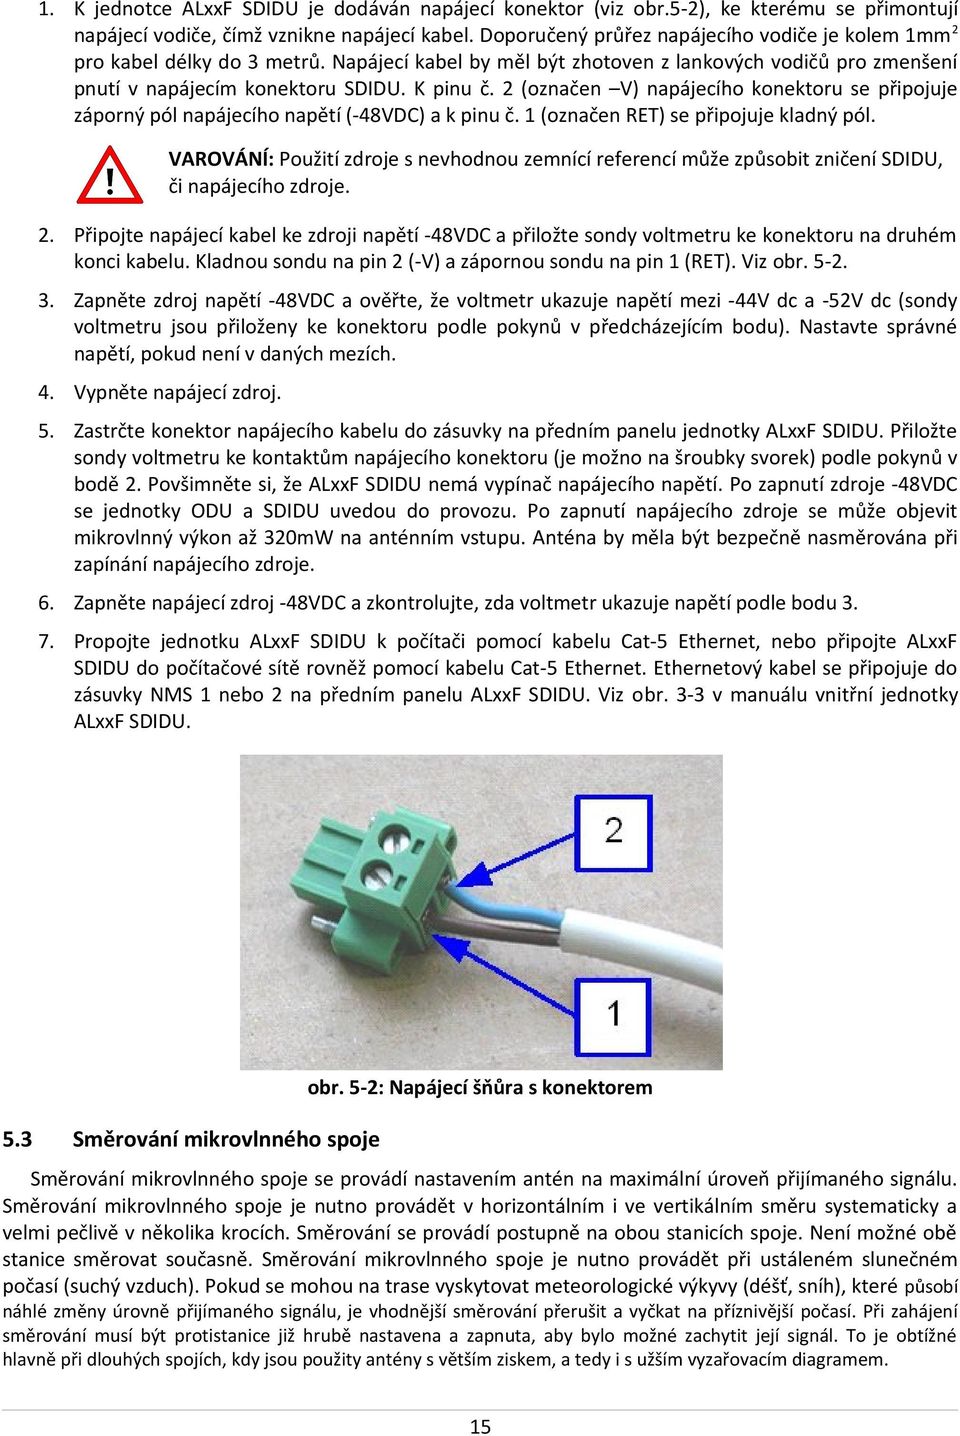 2 (označen V) napájecího konektoru se připojuje záporný pól napájecího napětí (-48VDC) a k pinu č. 1 (označen RET) se připojuje kladný pól.